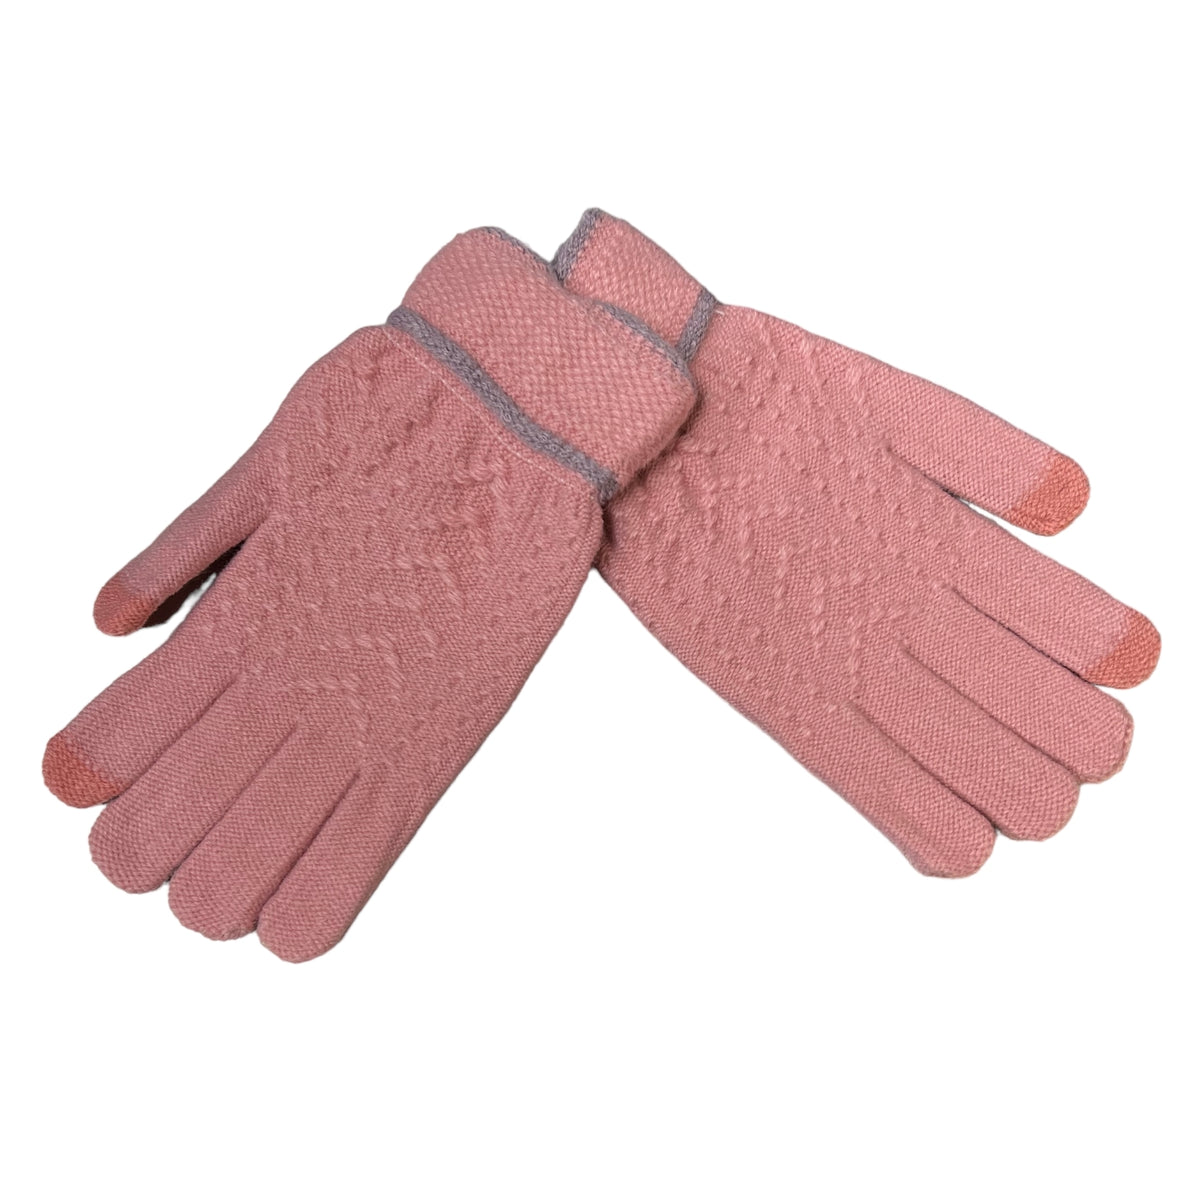 Mettez la chaleur à l'honneur avec une paire de gants laine de couleur rose. Des matières douces et raffinées qui offrent une douceur incomparable et un touché luxueux pour vous tenir bien au chaud. Un accessoire élégant qui s'accordera à toutes vos tenues !